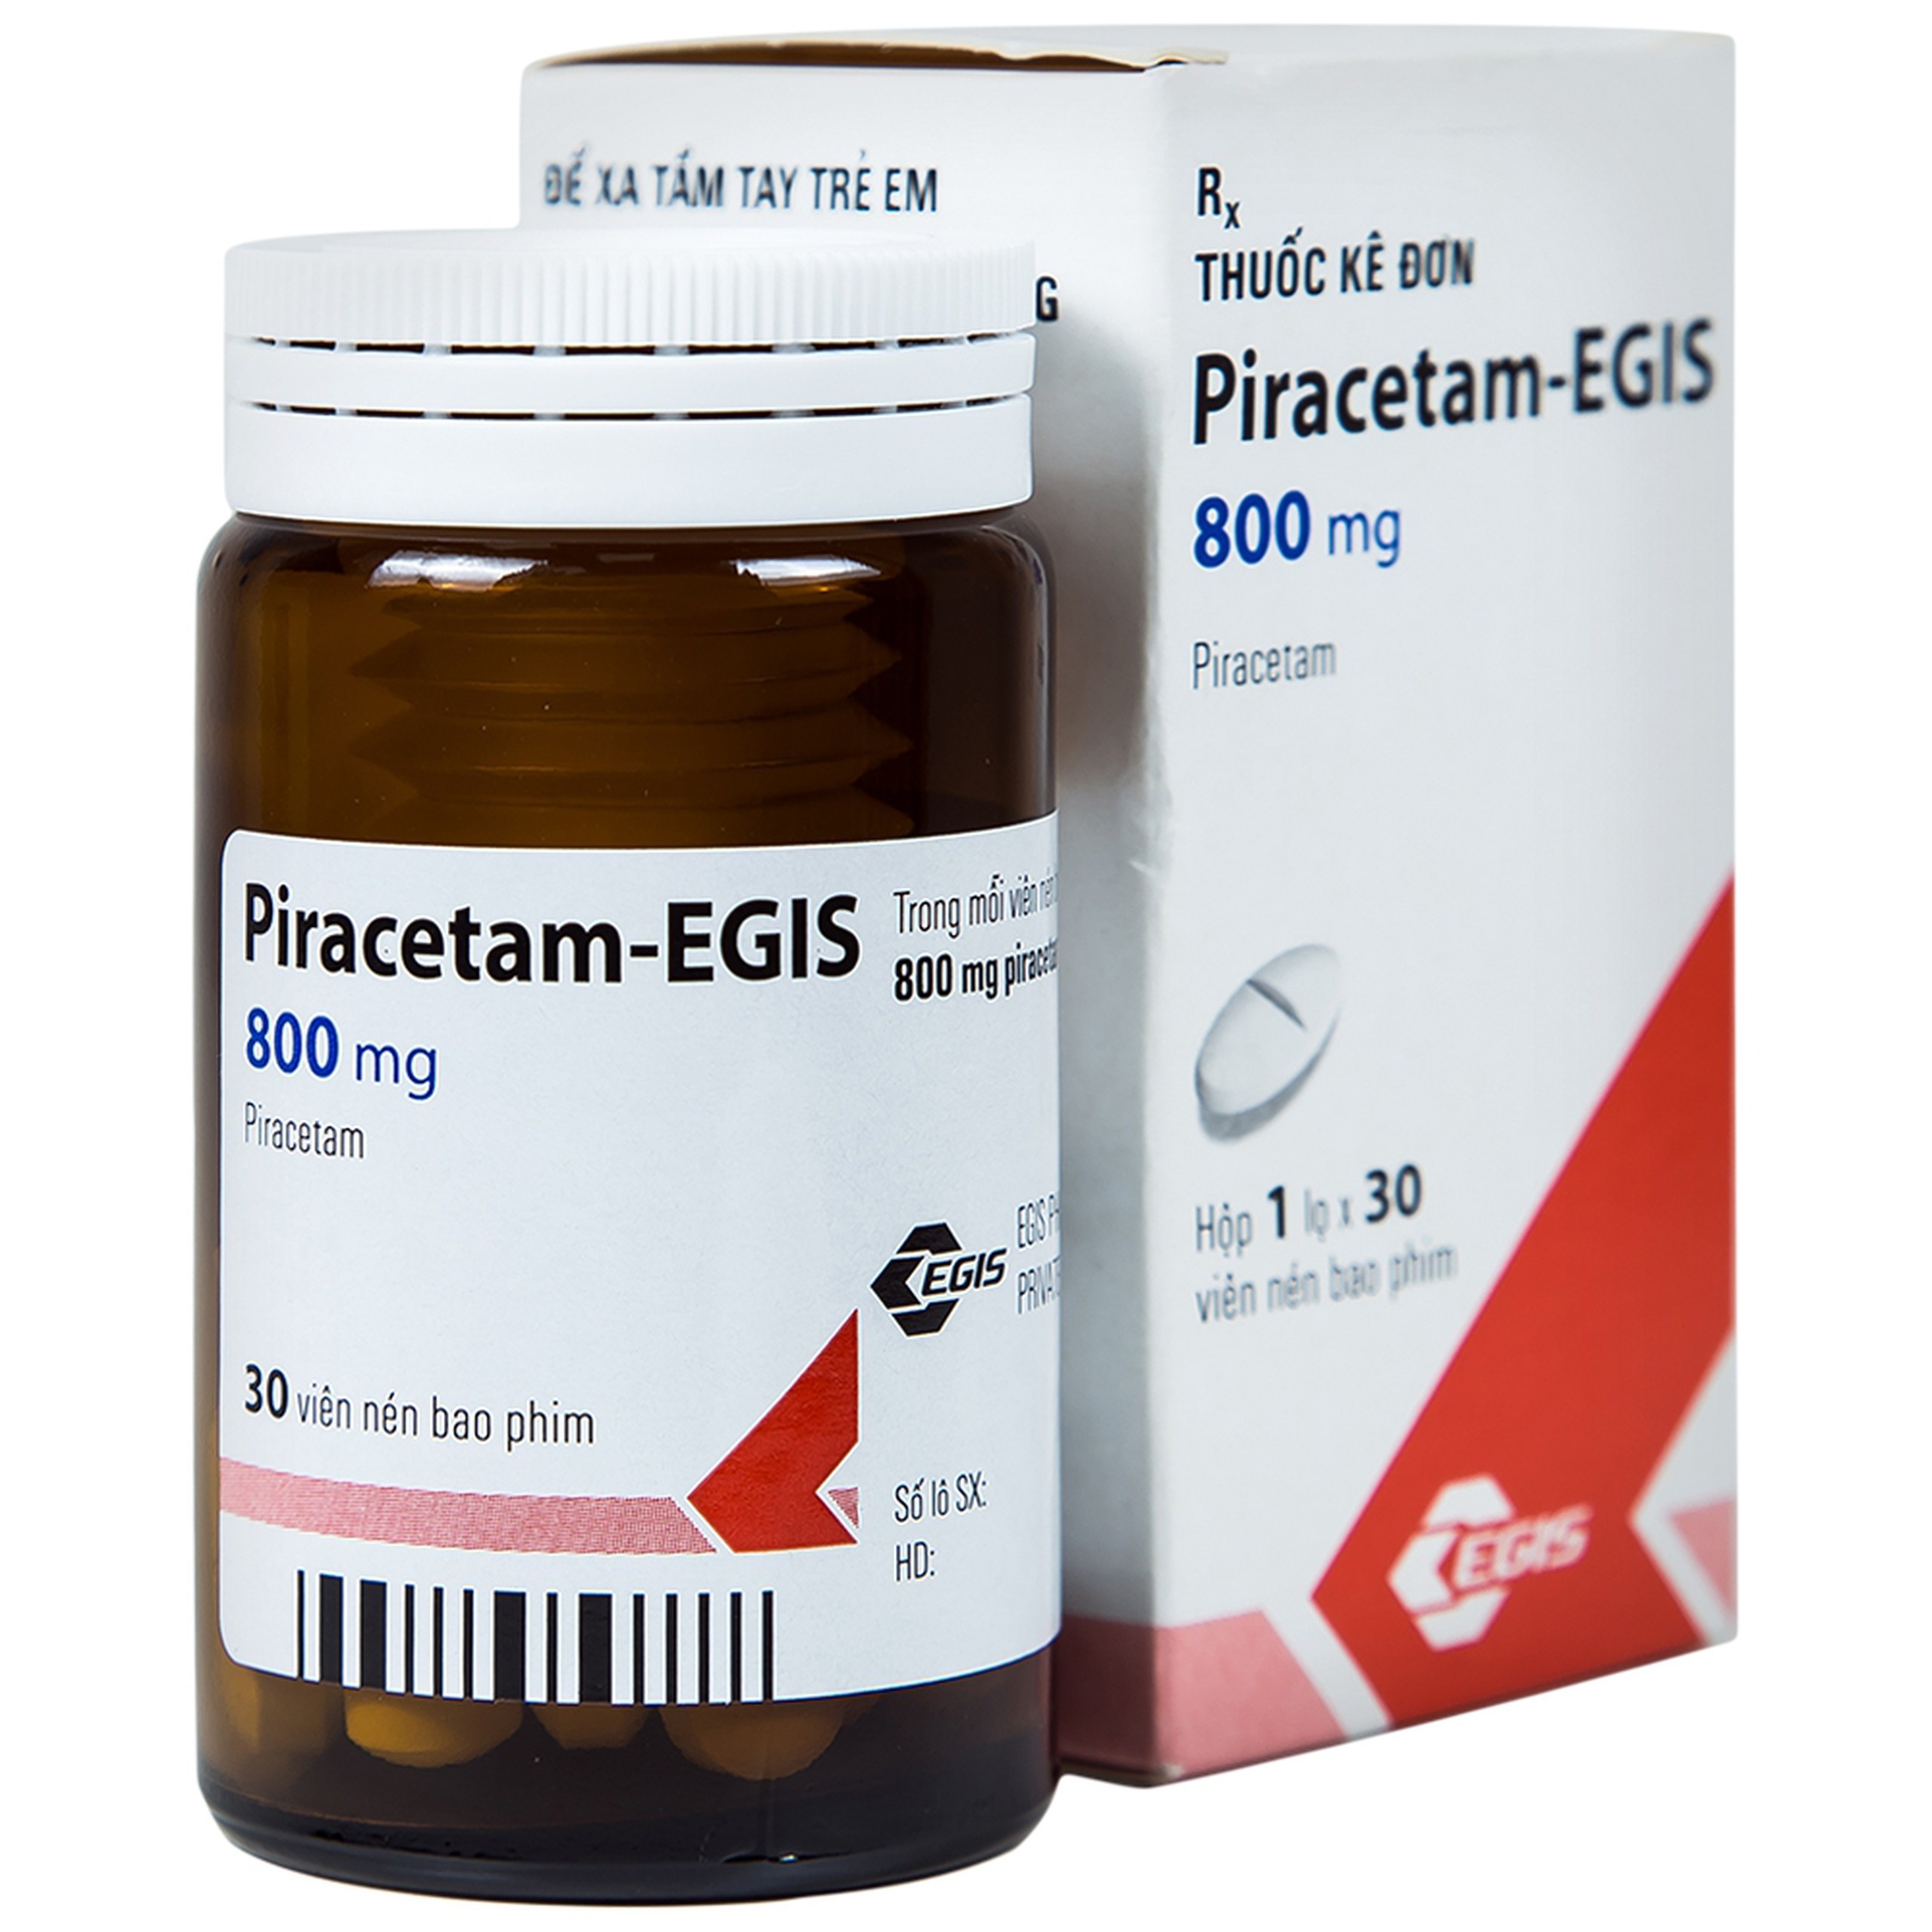 Viên nén Piracetam - Egis 800mg điều trị các triệu chứng của hội chứng tâm thần thực thể (30 viên)